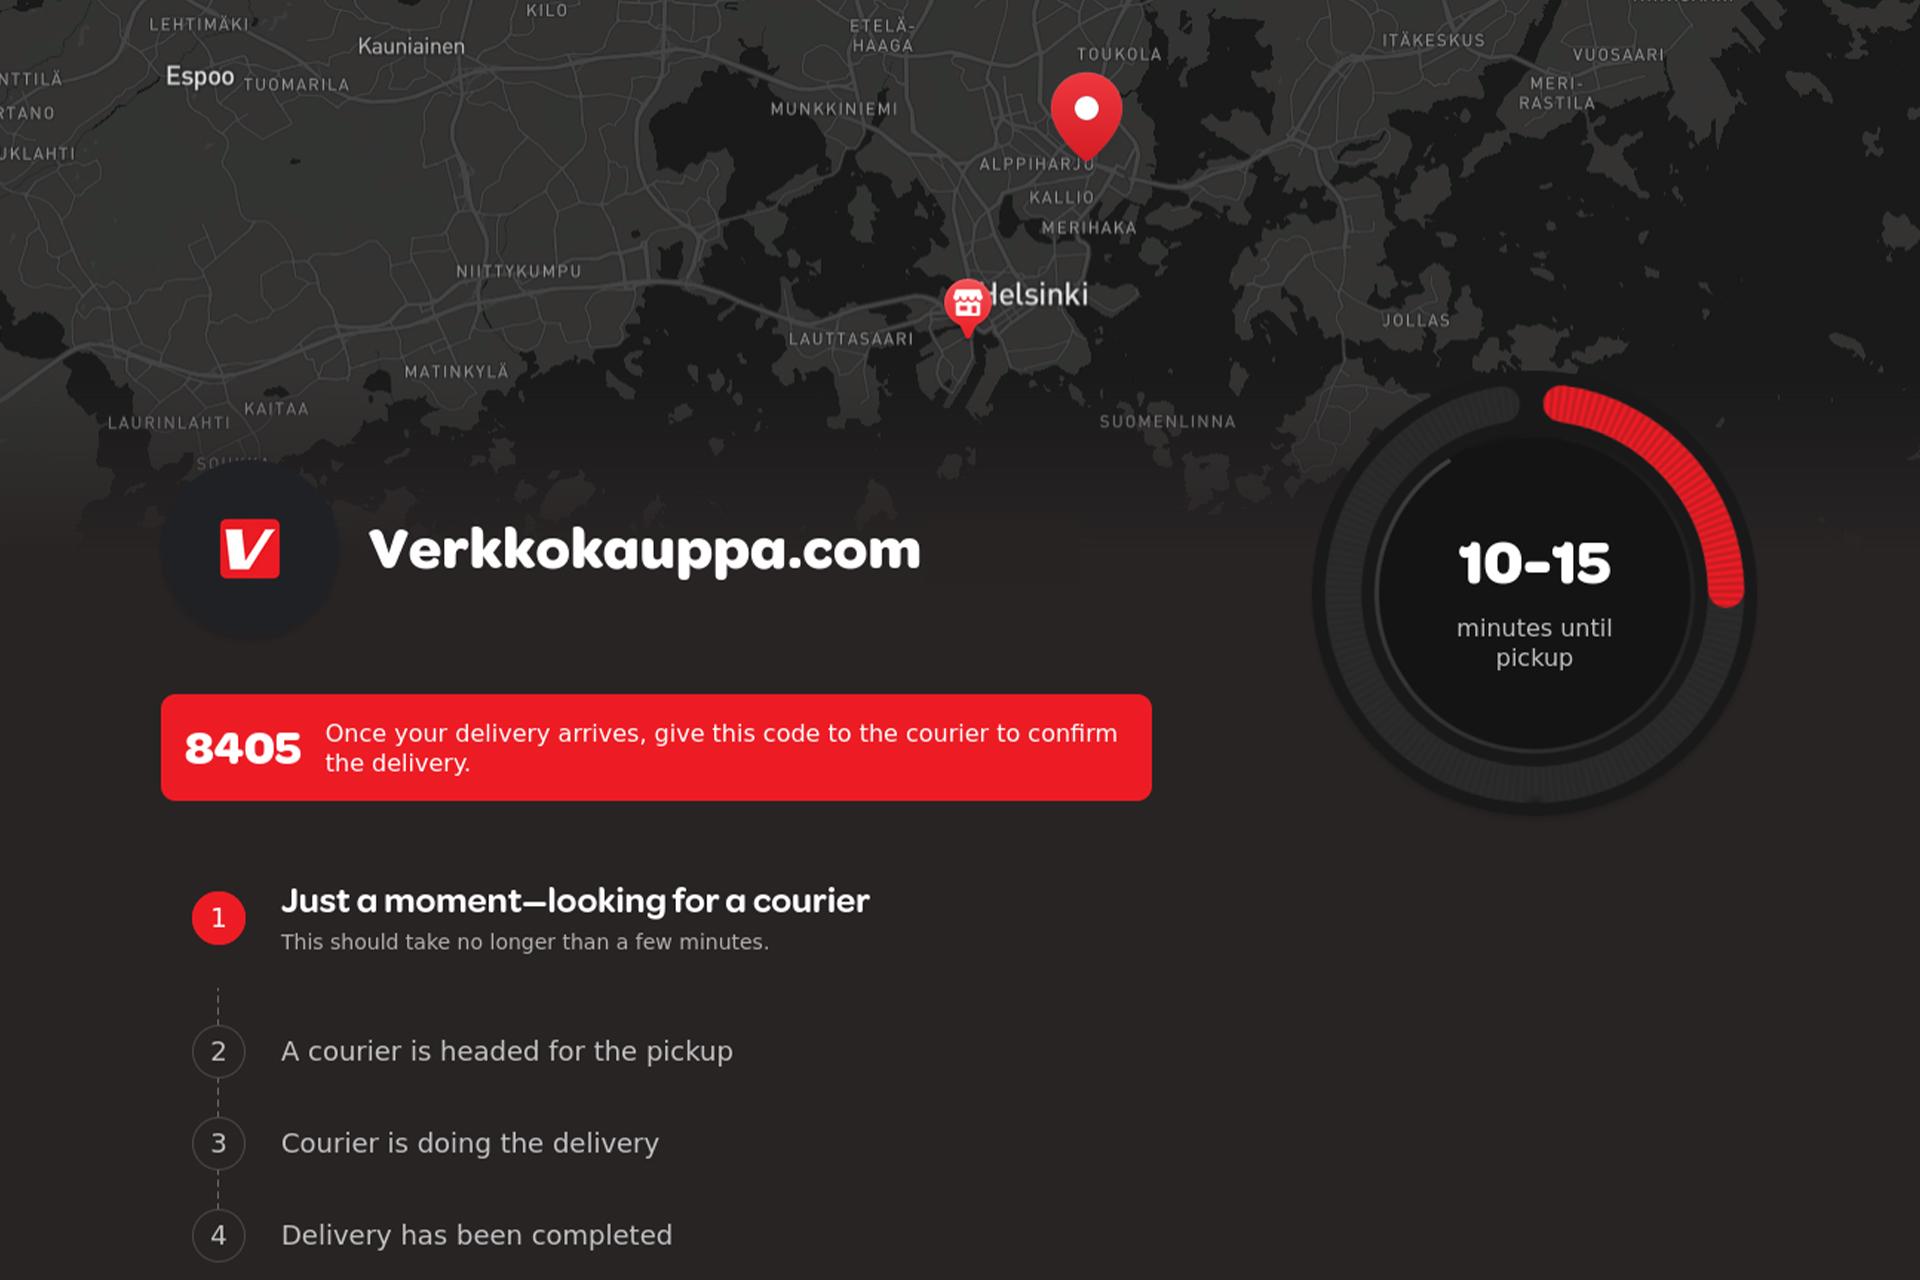 Kuvassa Wolt-app jossa näkyy Verkkokauppa.com tilaus ja toimitusaika. Pin-koodi on punaisessa laatikossa.